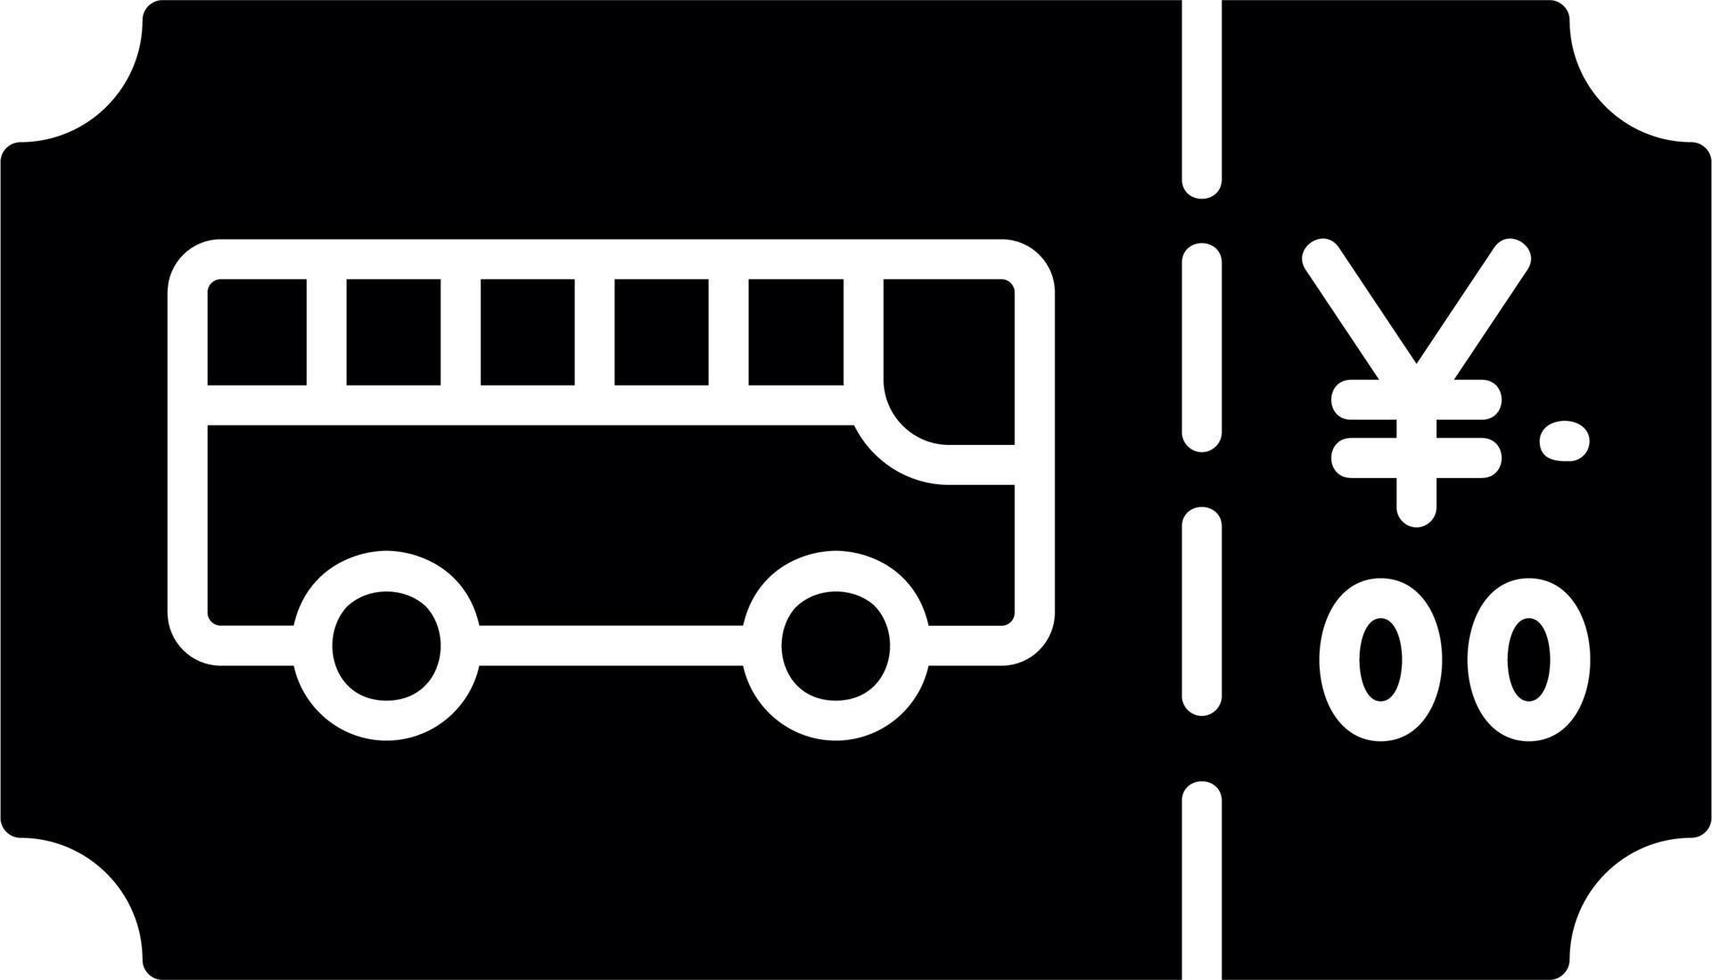 autobus biglietto vettore icona